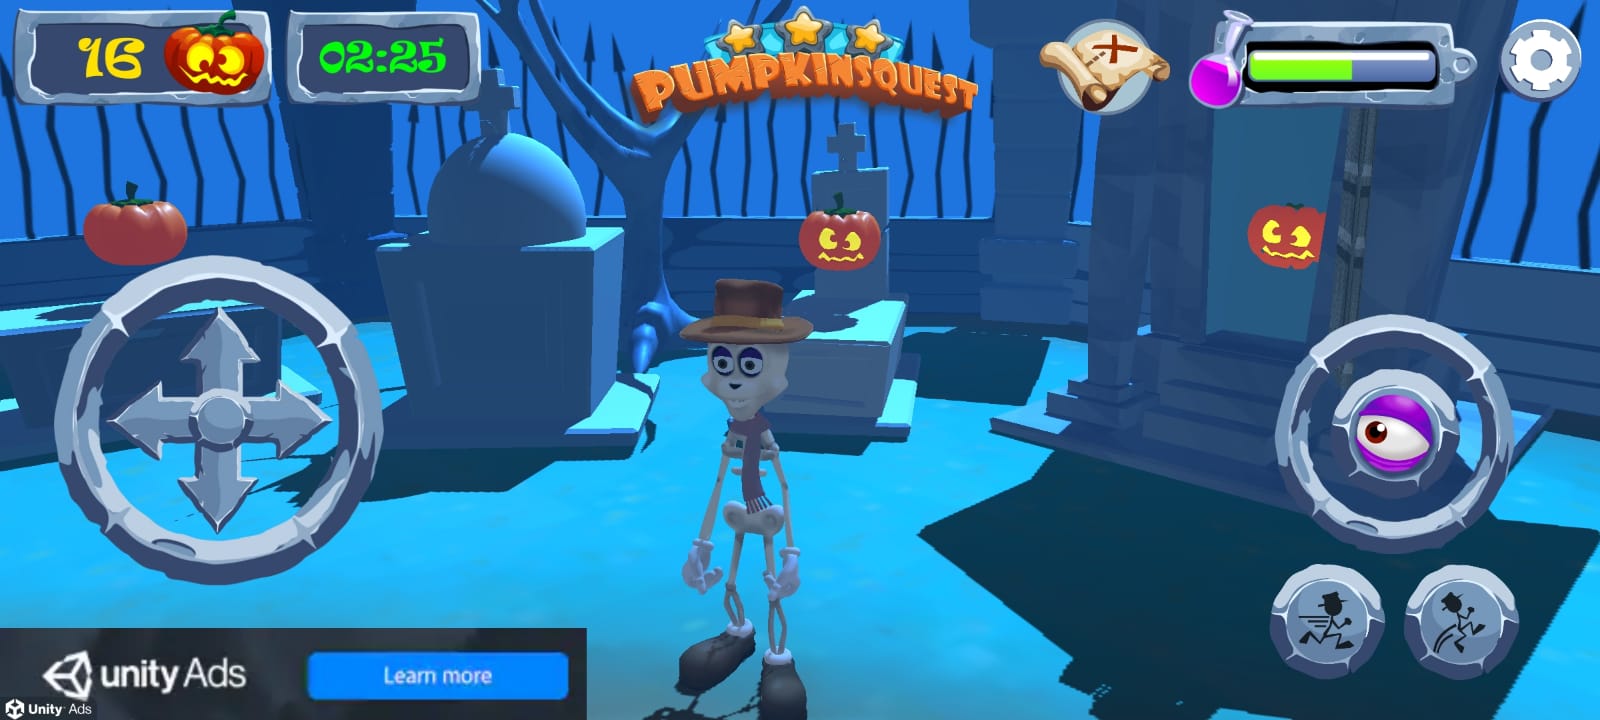 Pumpkins Quest - Android game screenshots.